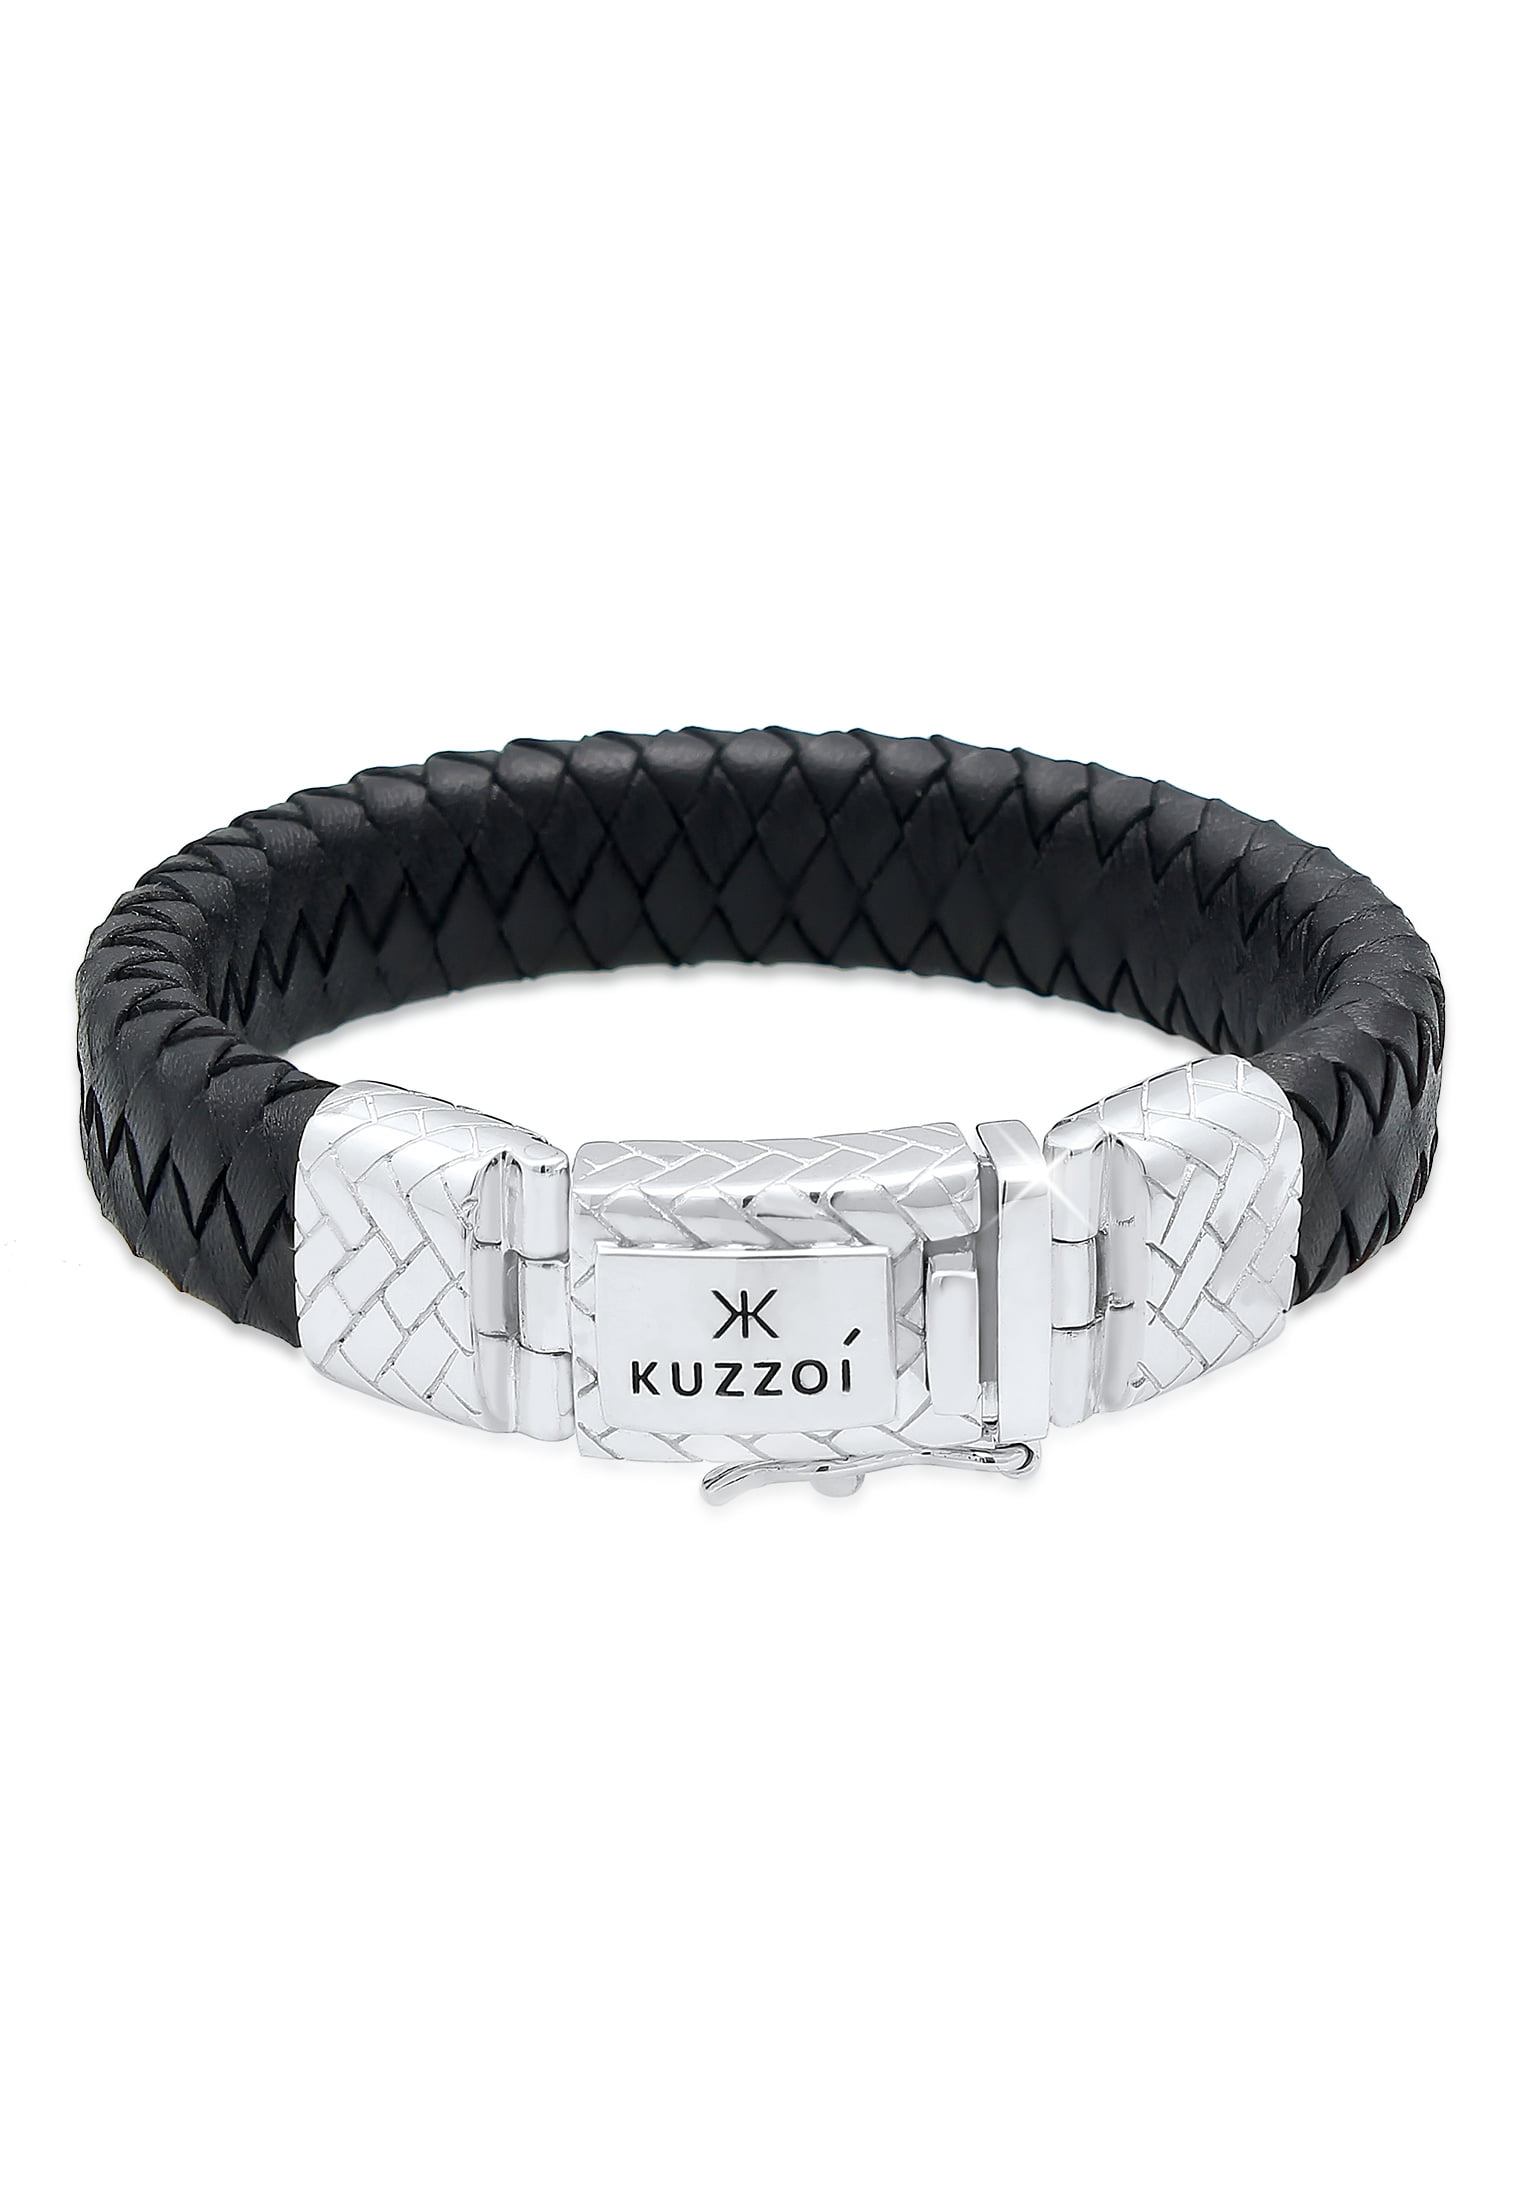 KUZZOI 0.51 Men Leather Bracelet Vintage Safety clasp 925 Silver from  7.48 